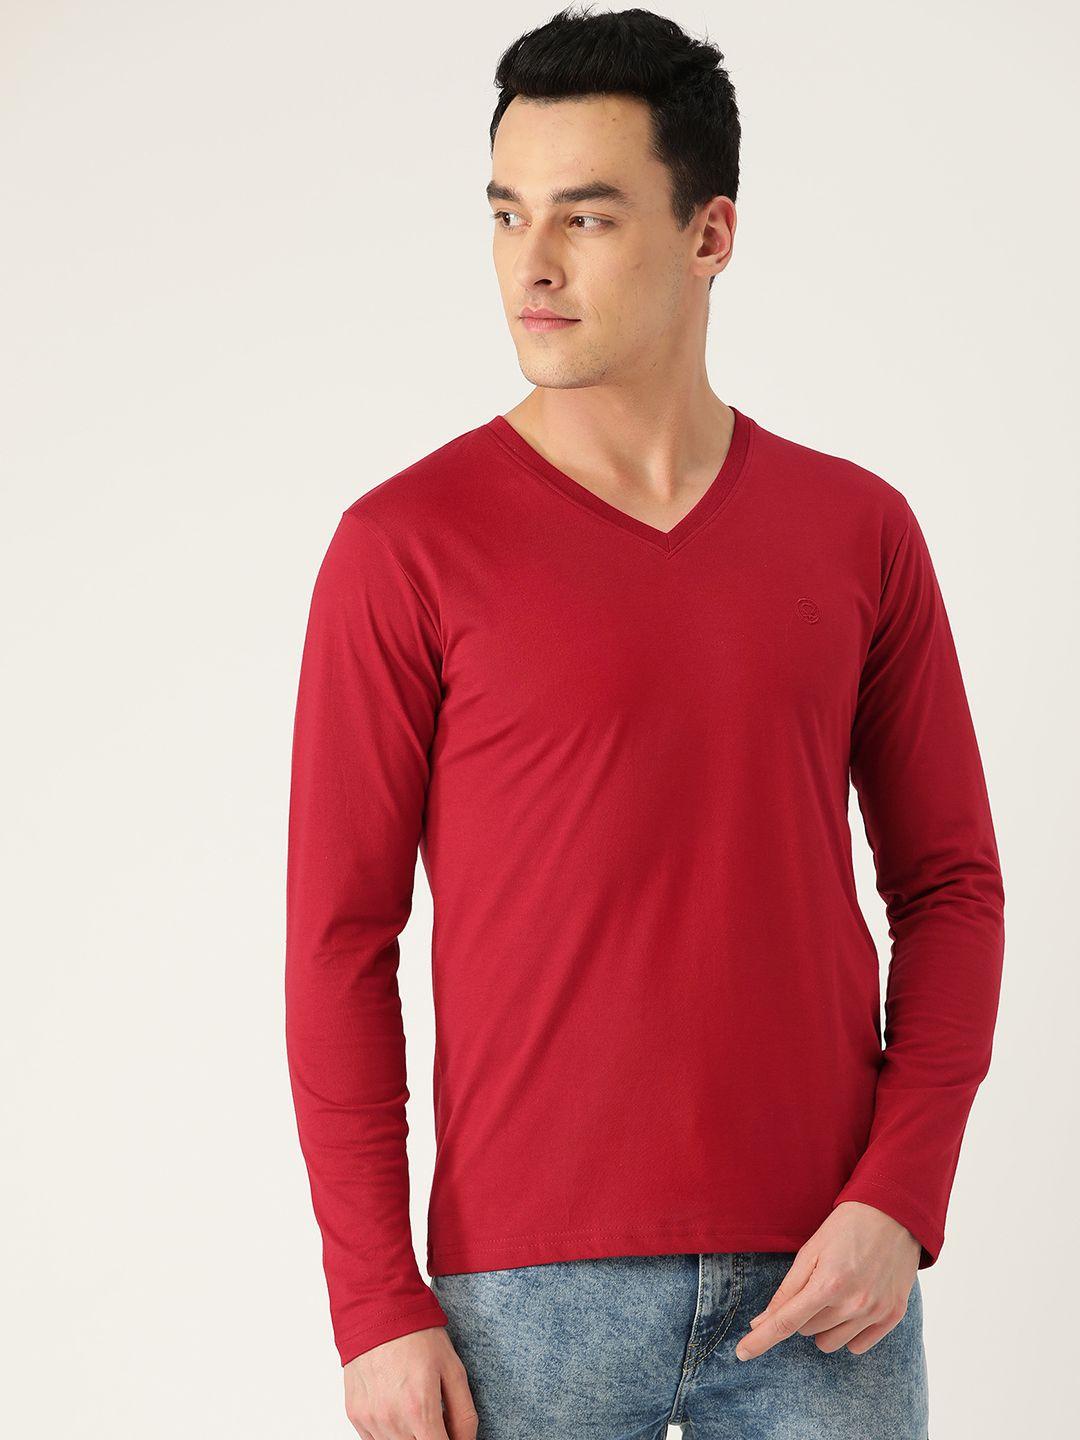 chkokko men red solid v-neck t-shirt